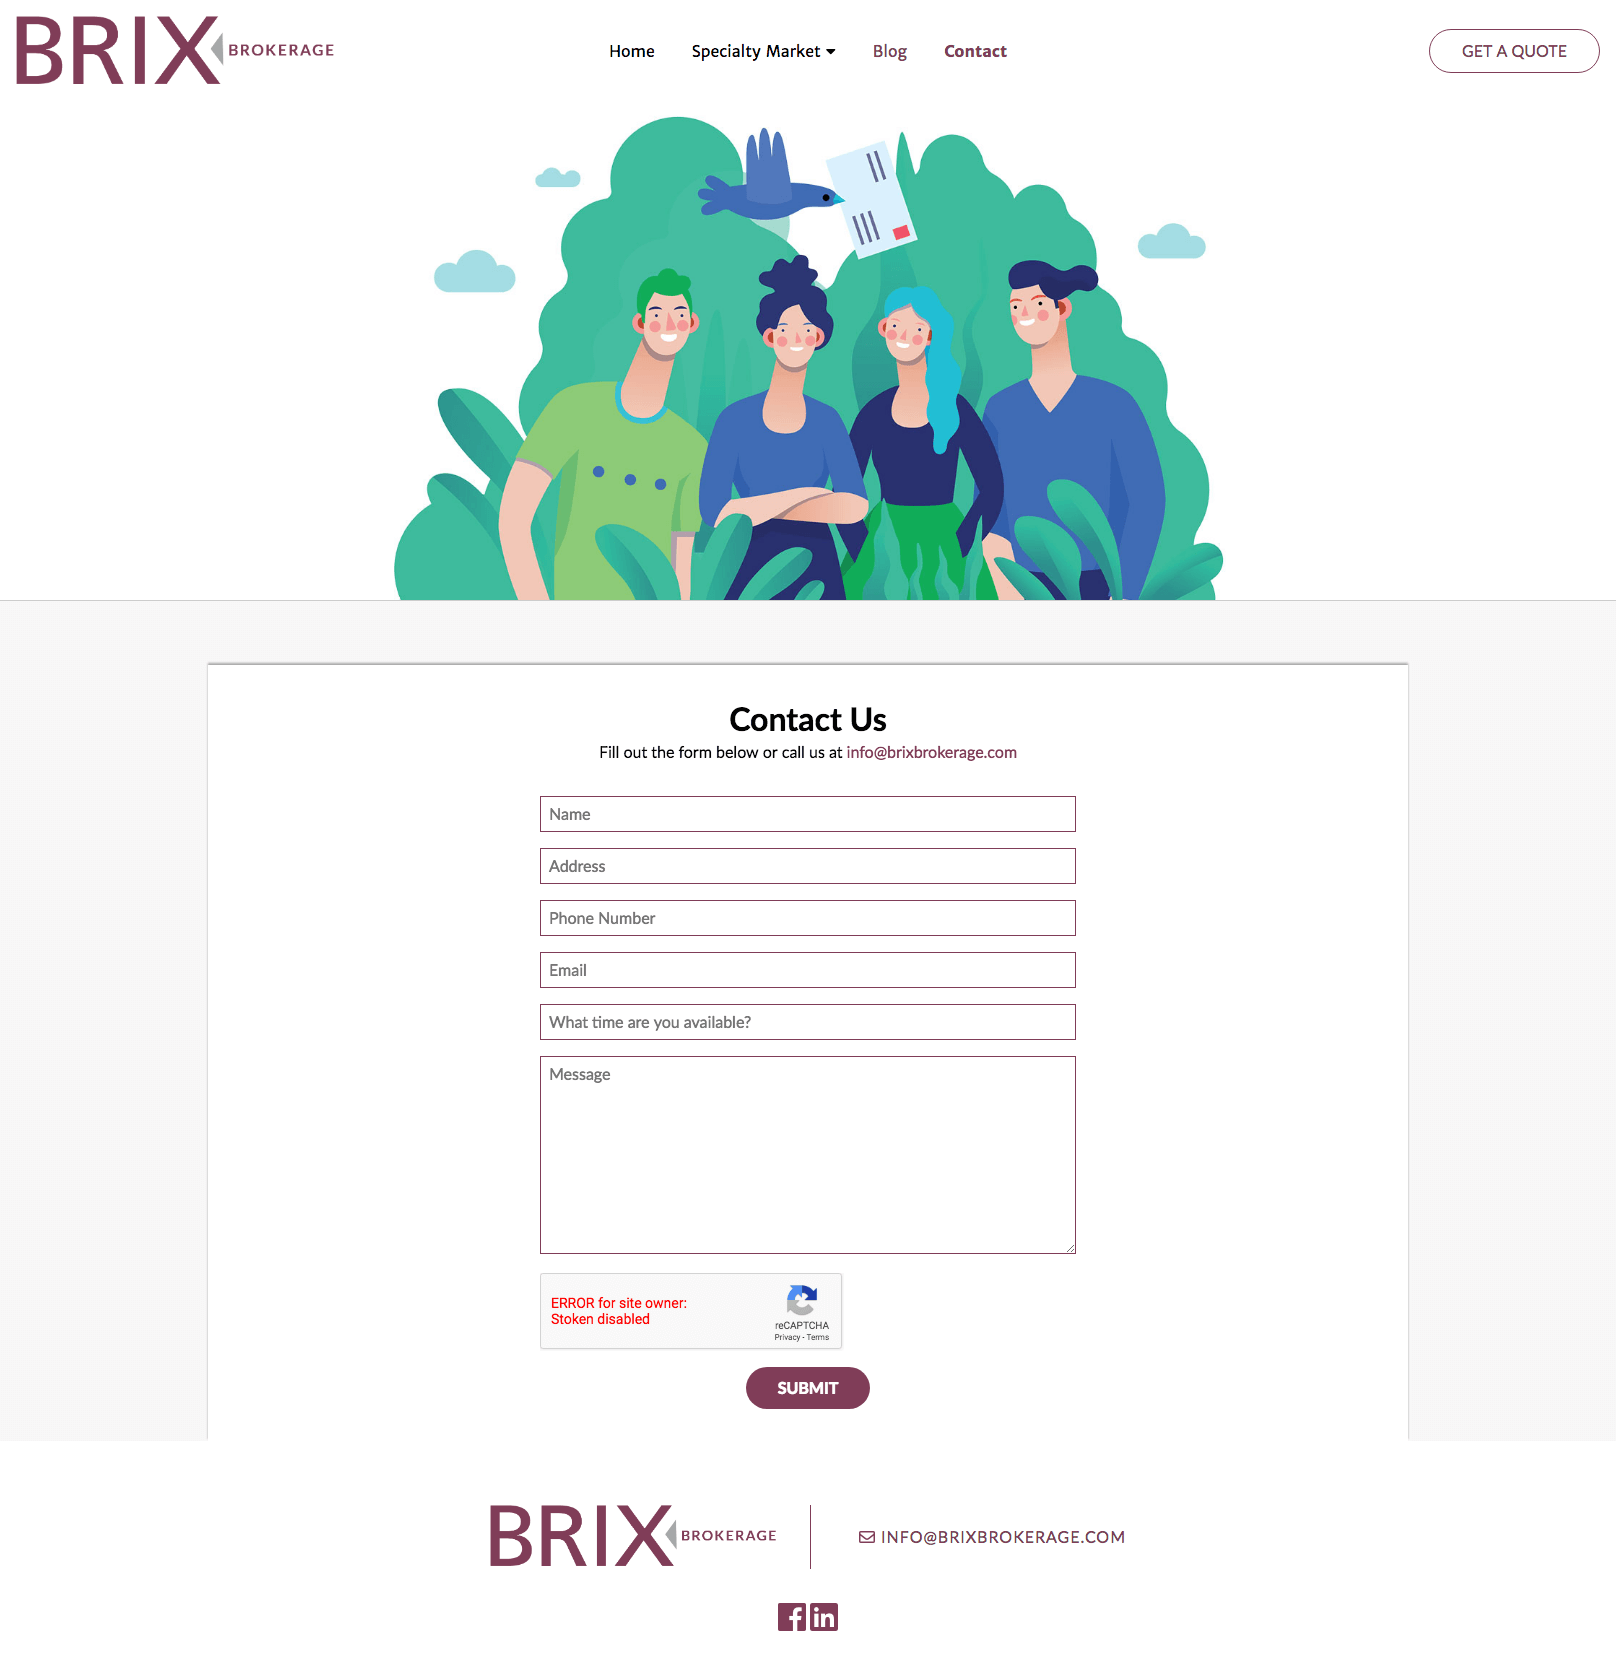 BRIX Brokerage – Contact